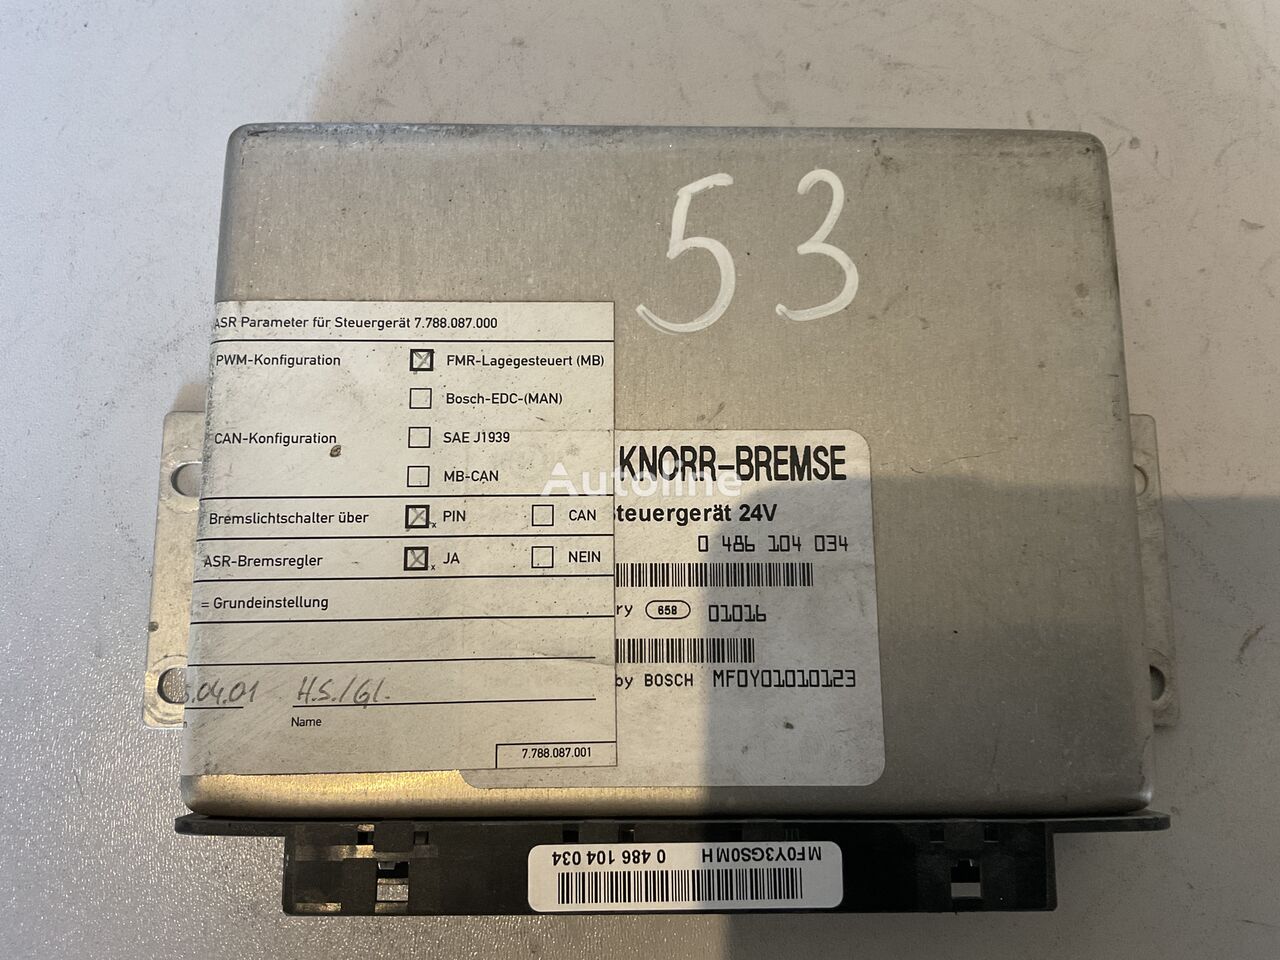 Knorr-Bremse 0486104034 0486104034 styrenhet till Bosch 0486104034 buss